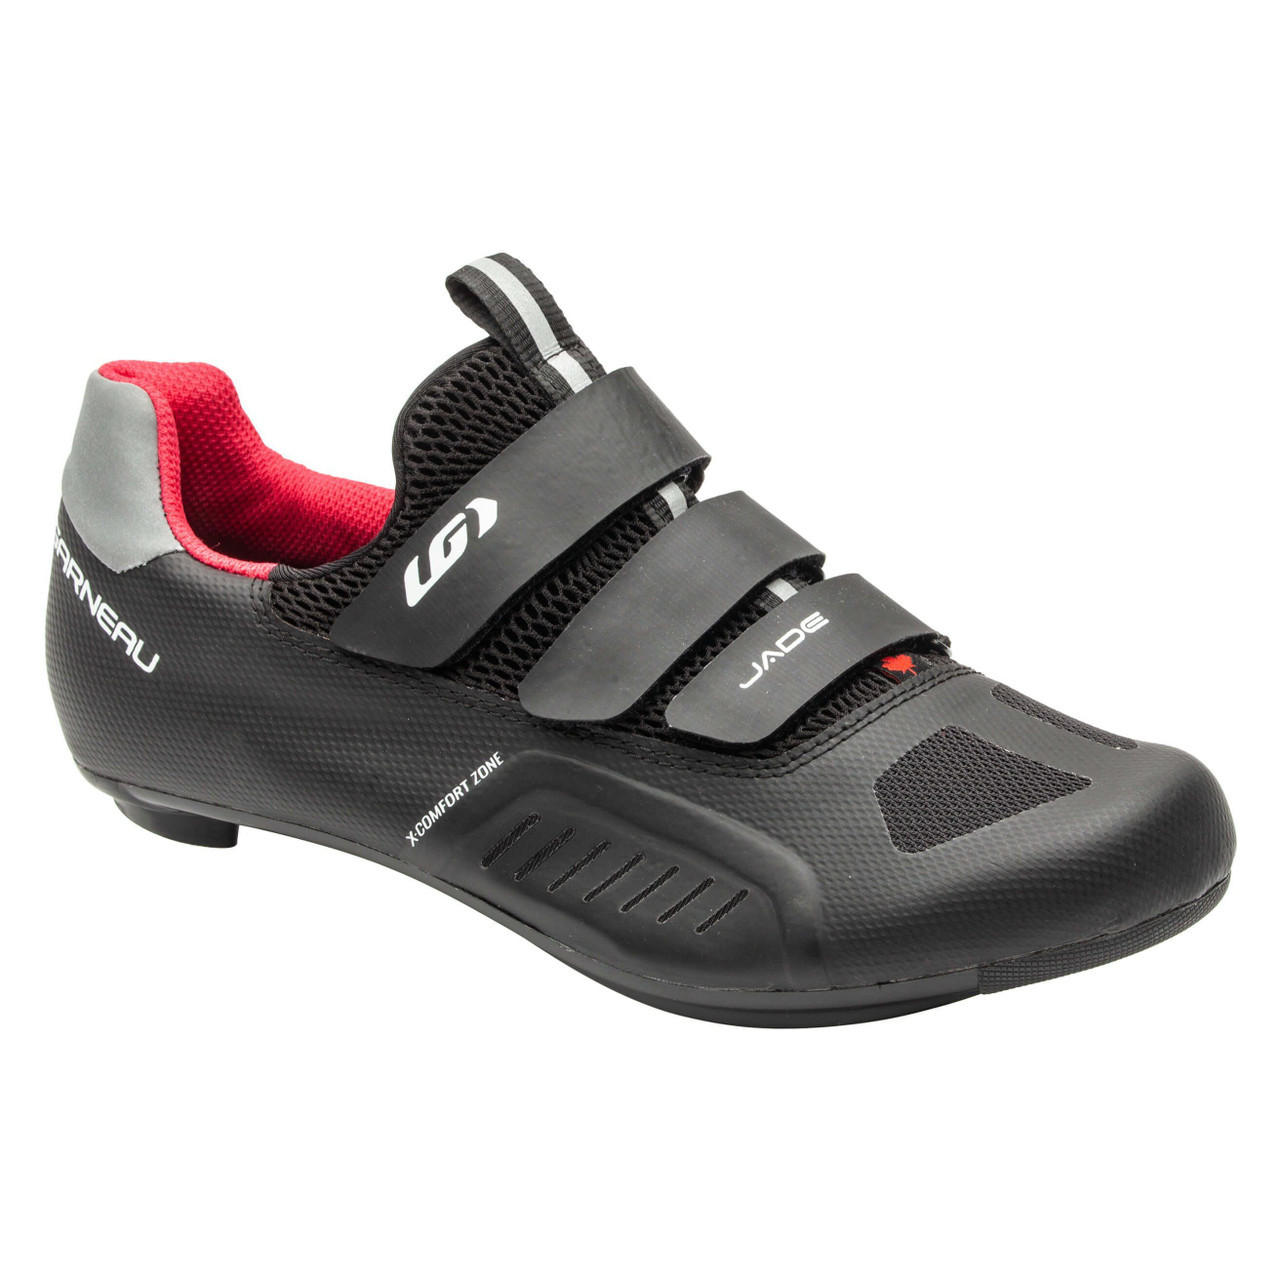 Garneau Carbon XZ Shoes - Black - 44.5